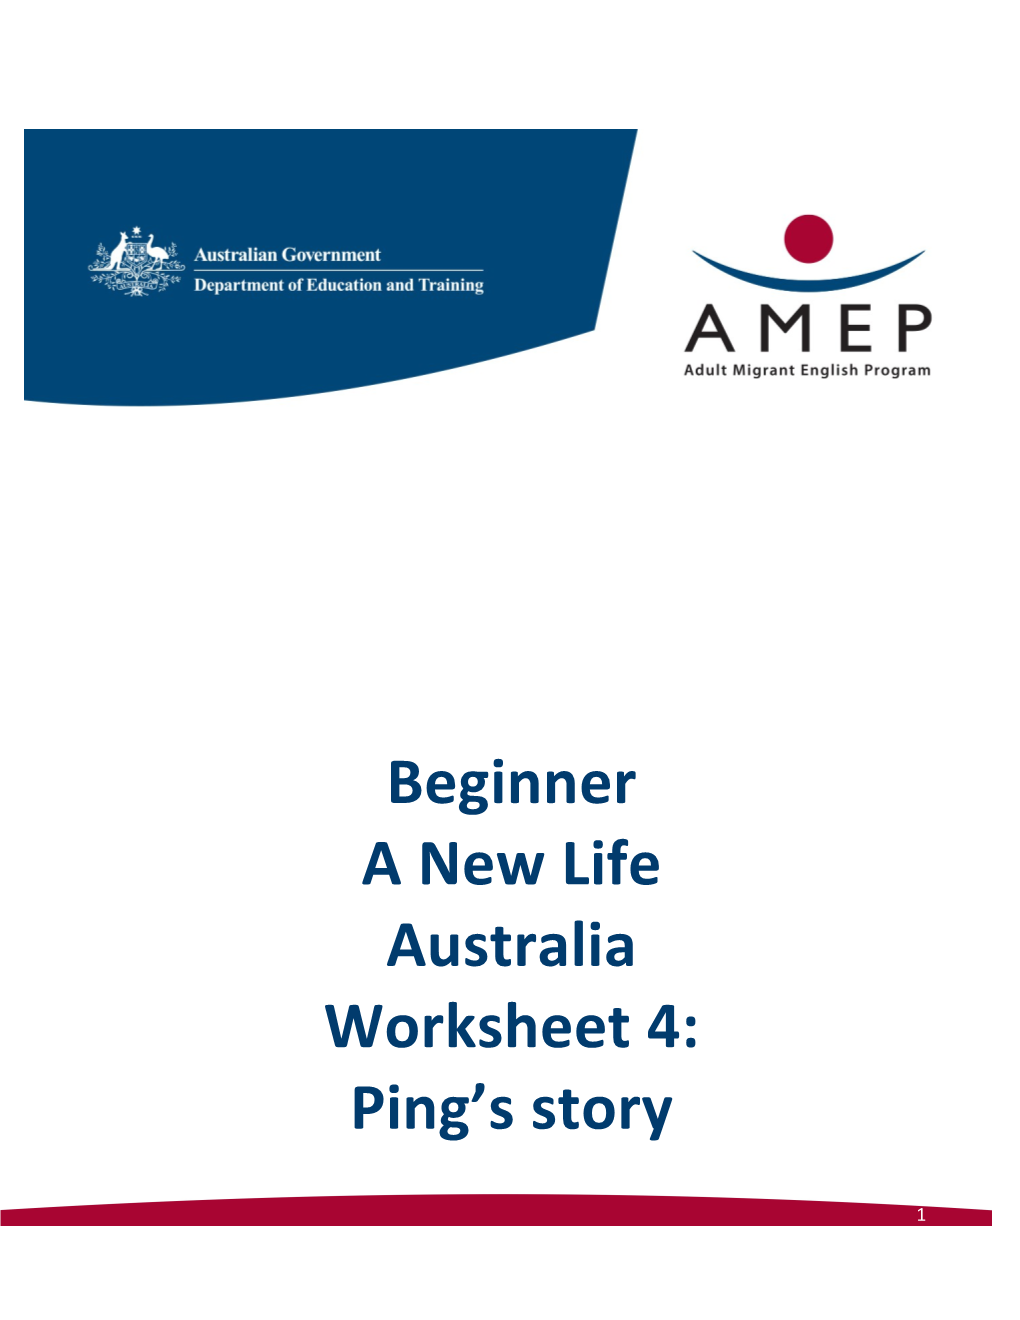 Beginner a New Life Australia Worksheet 4: Ping S Story